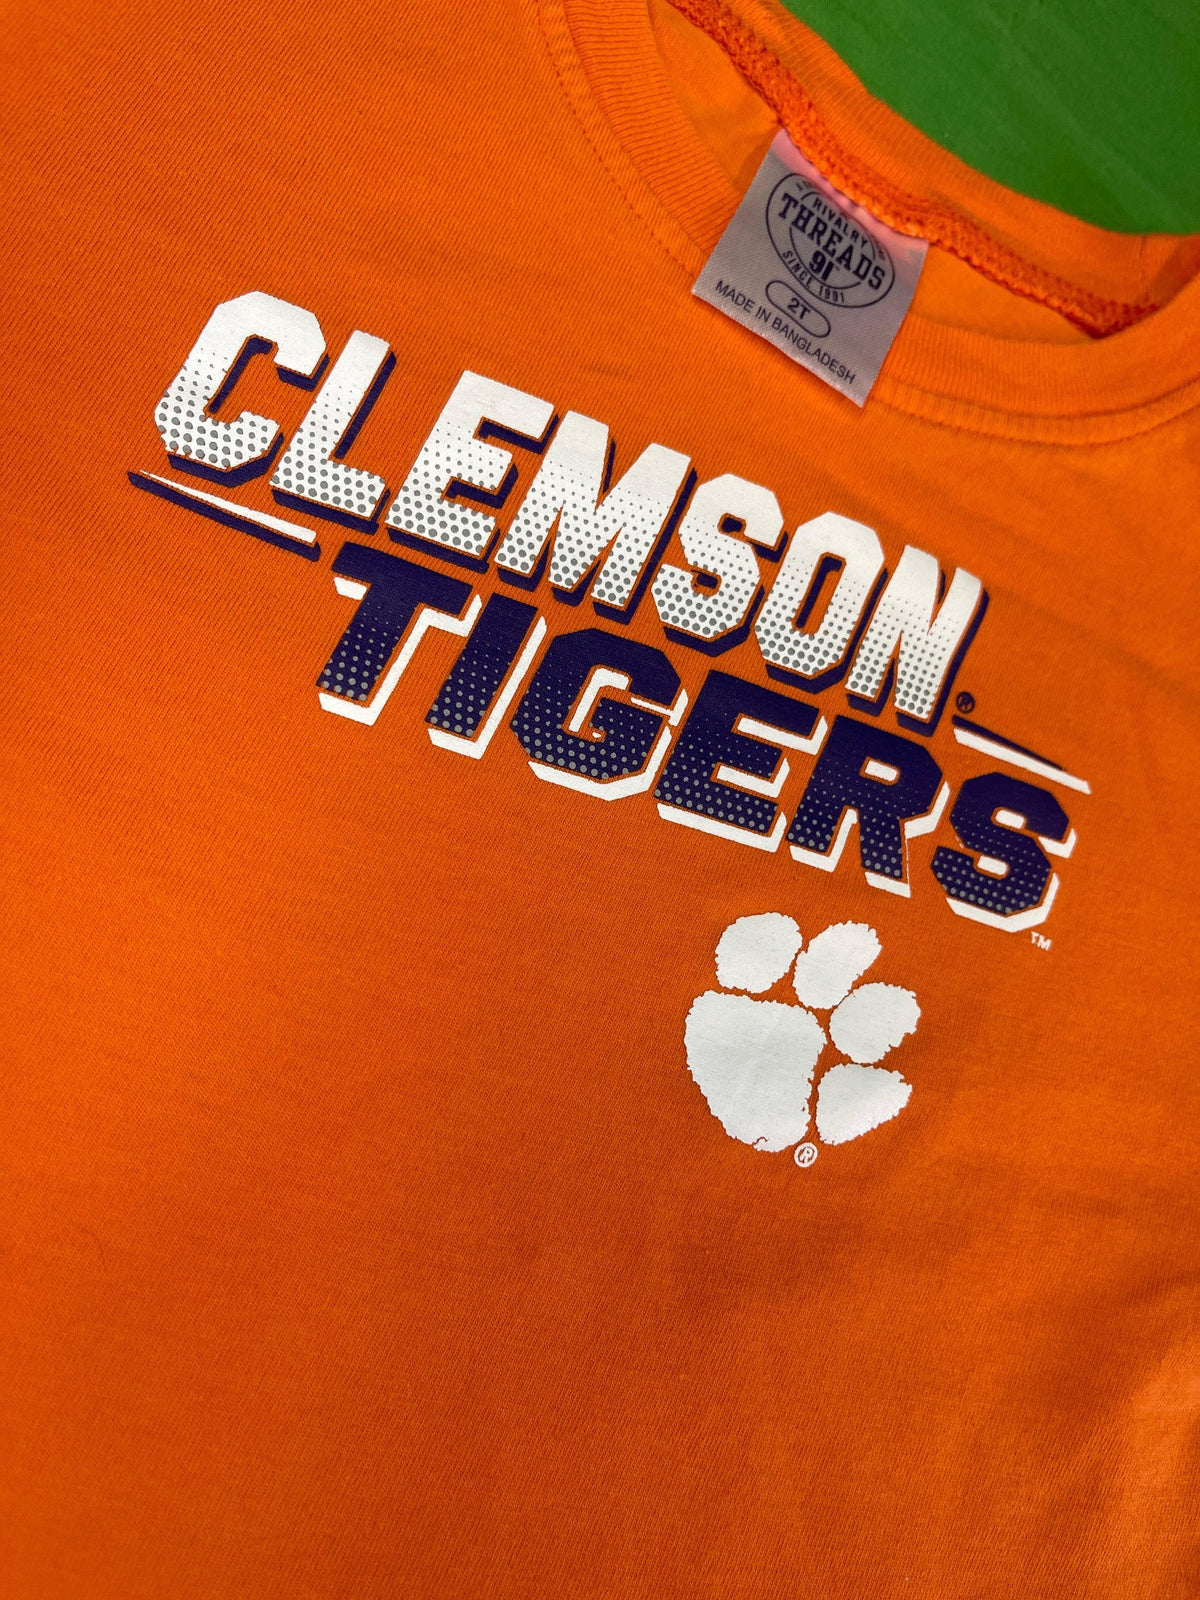 NCAA Clemson Tigers Orange T-shirt Toddler 2T